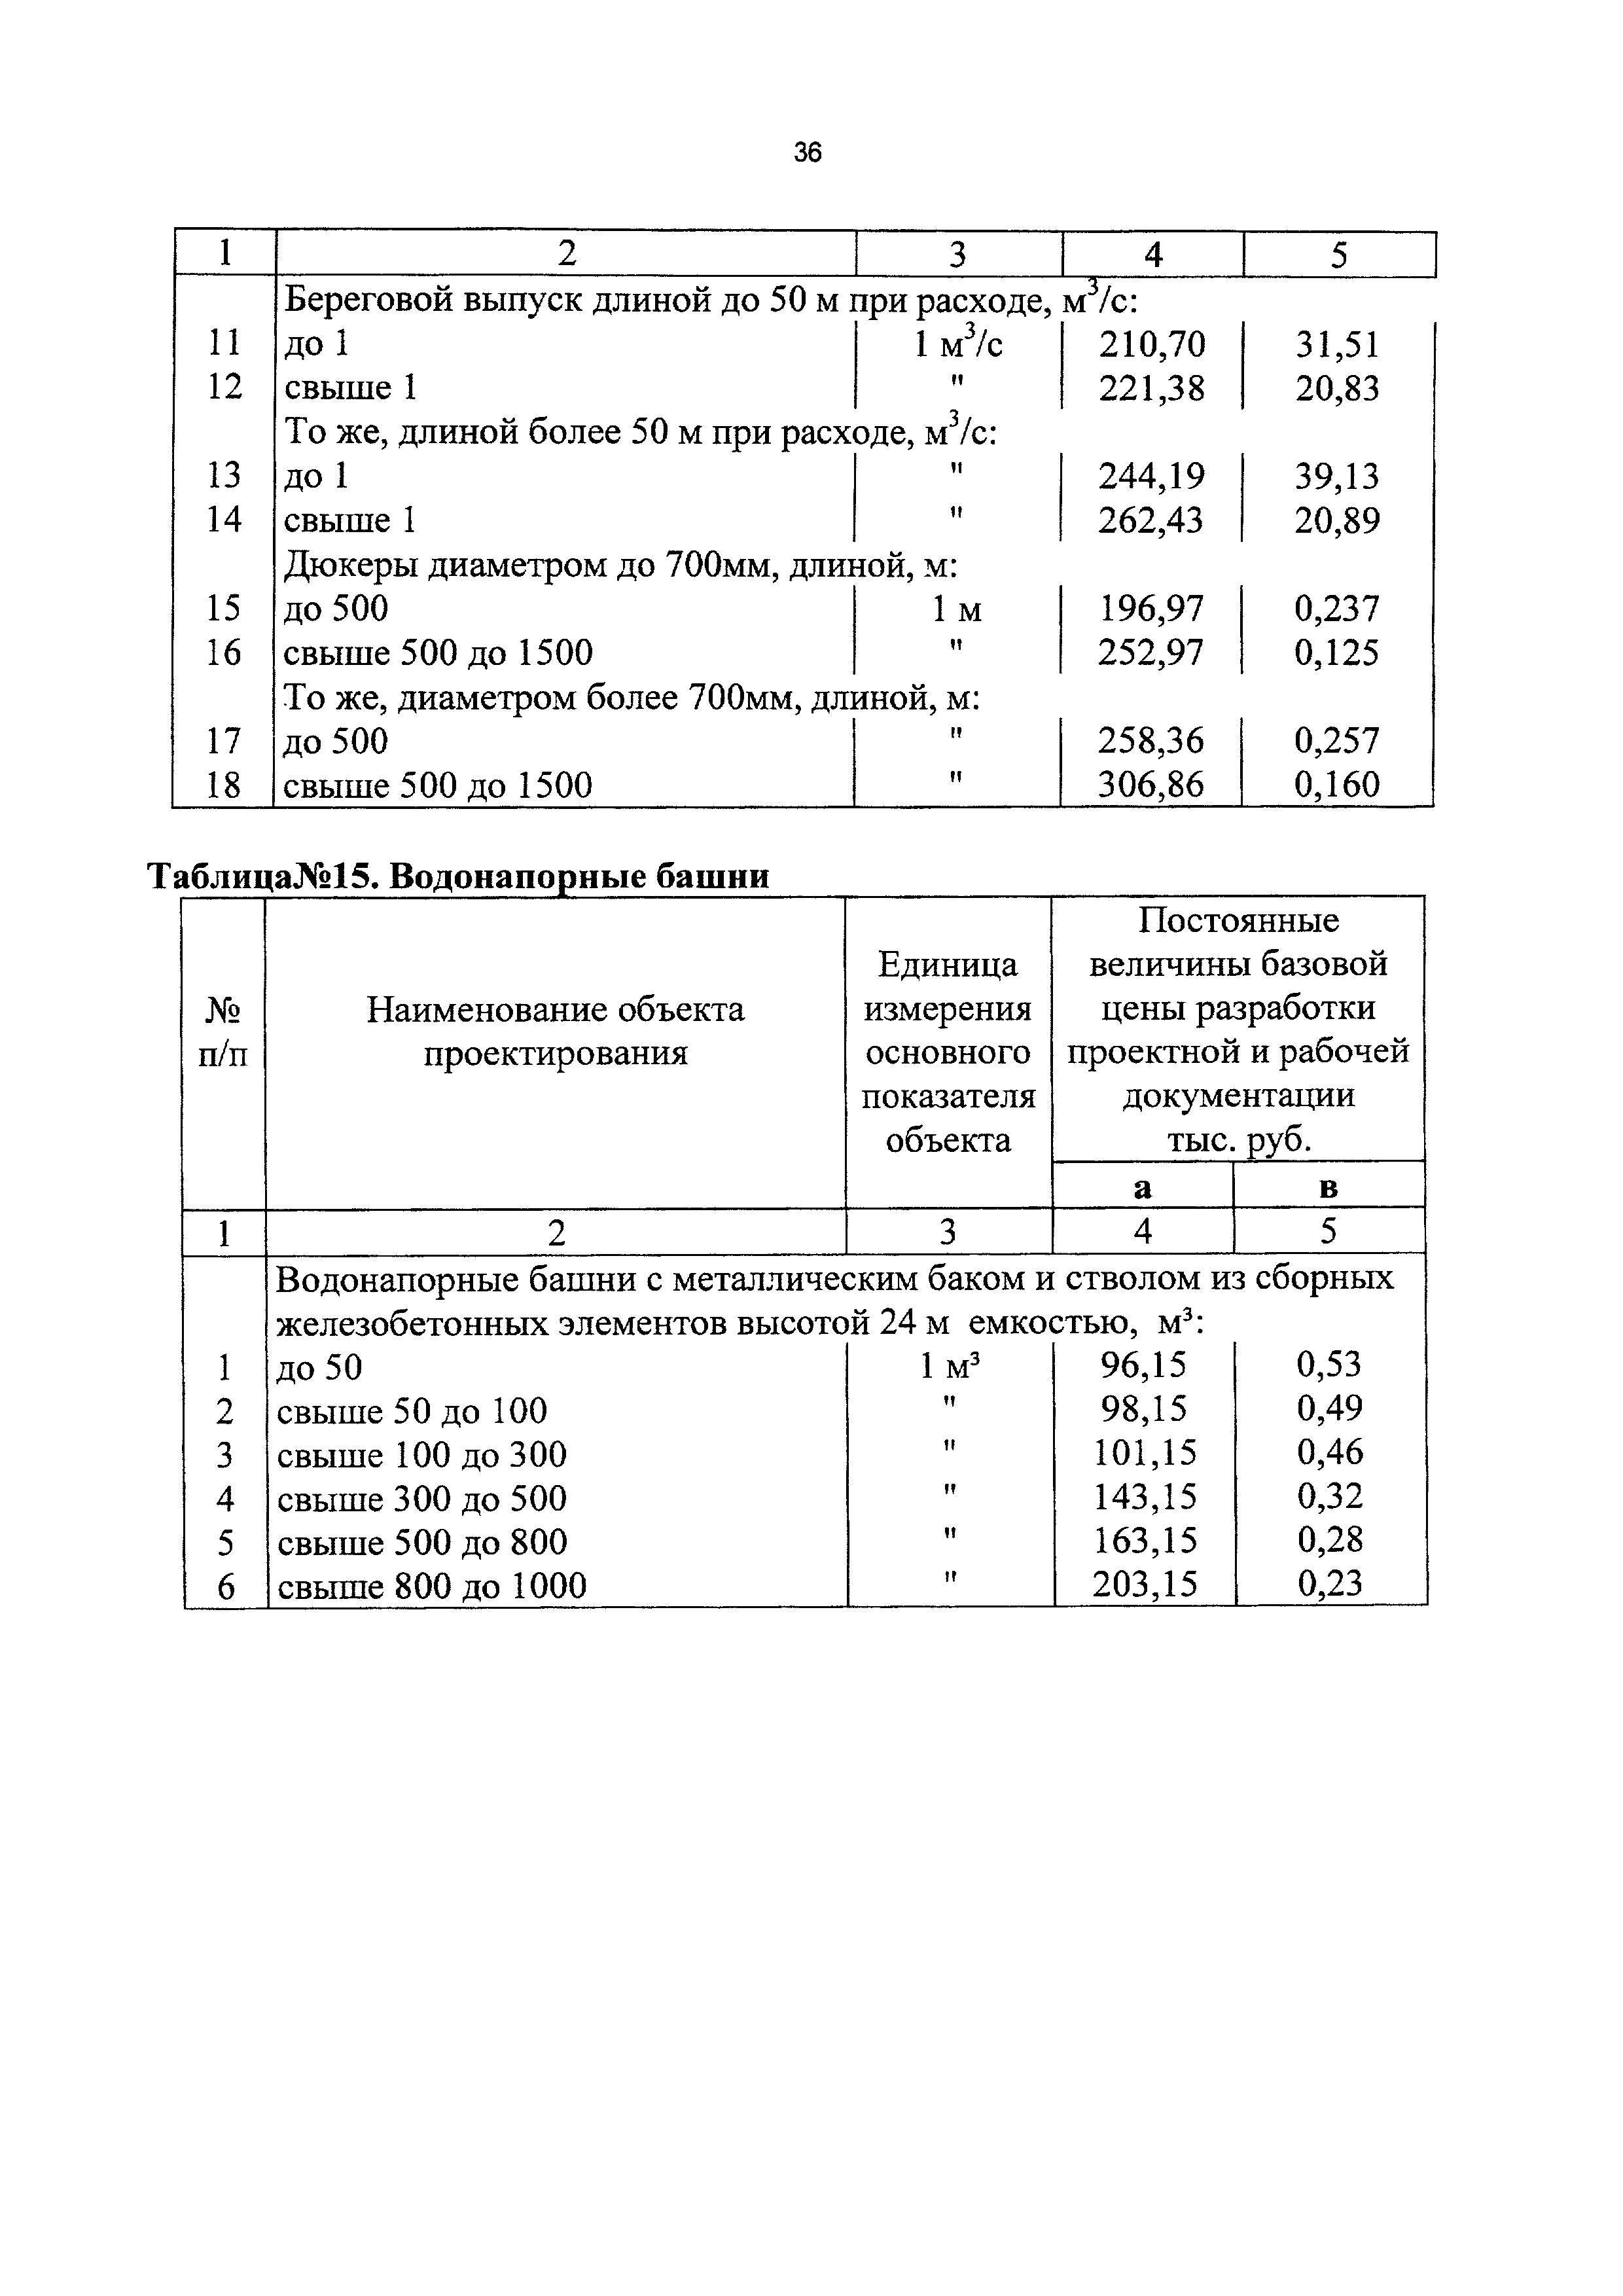 СБЦП 81-2001-17